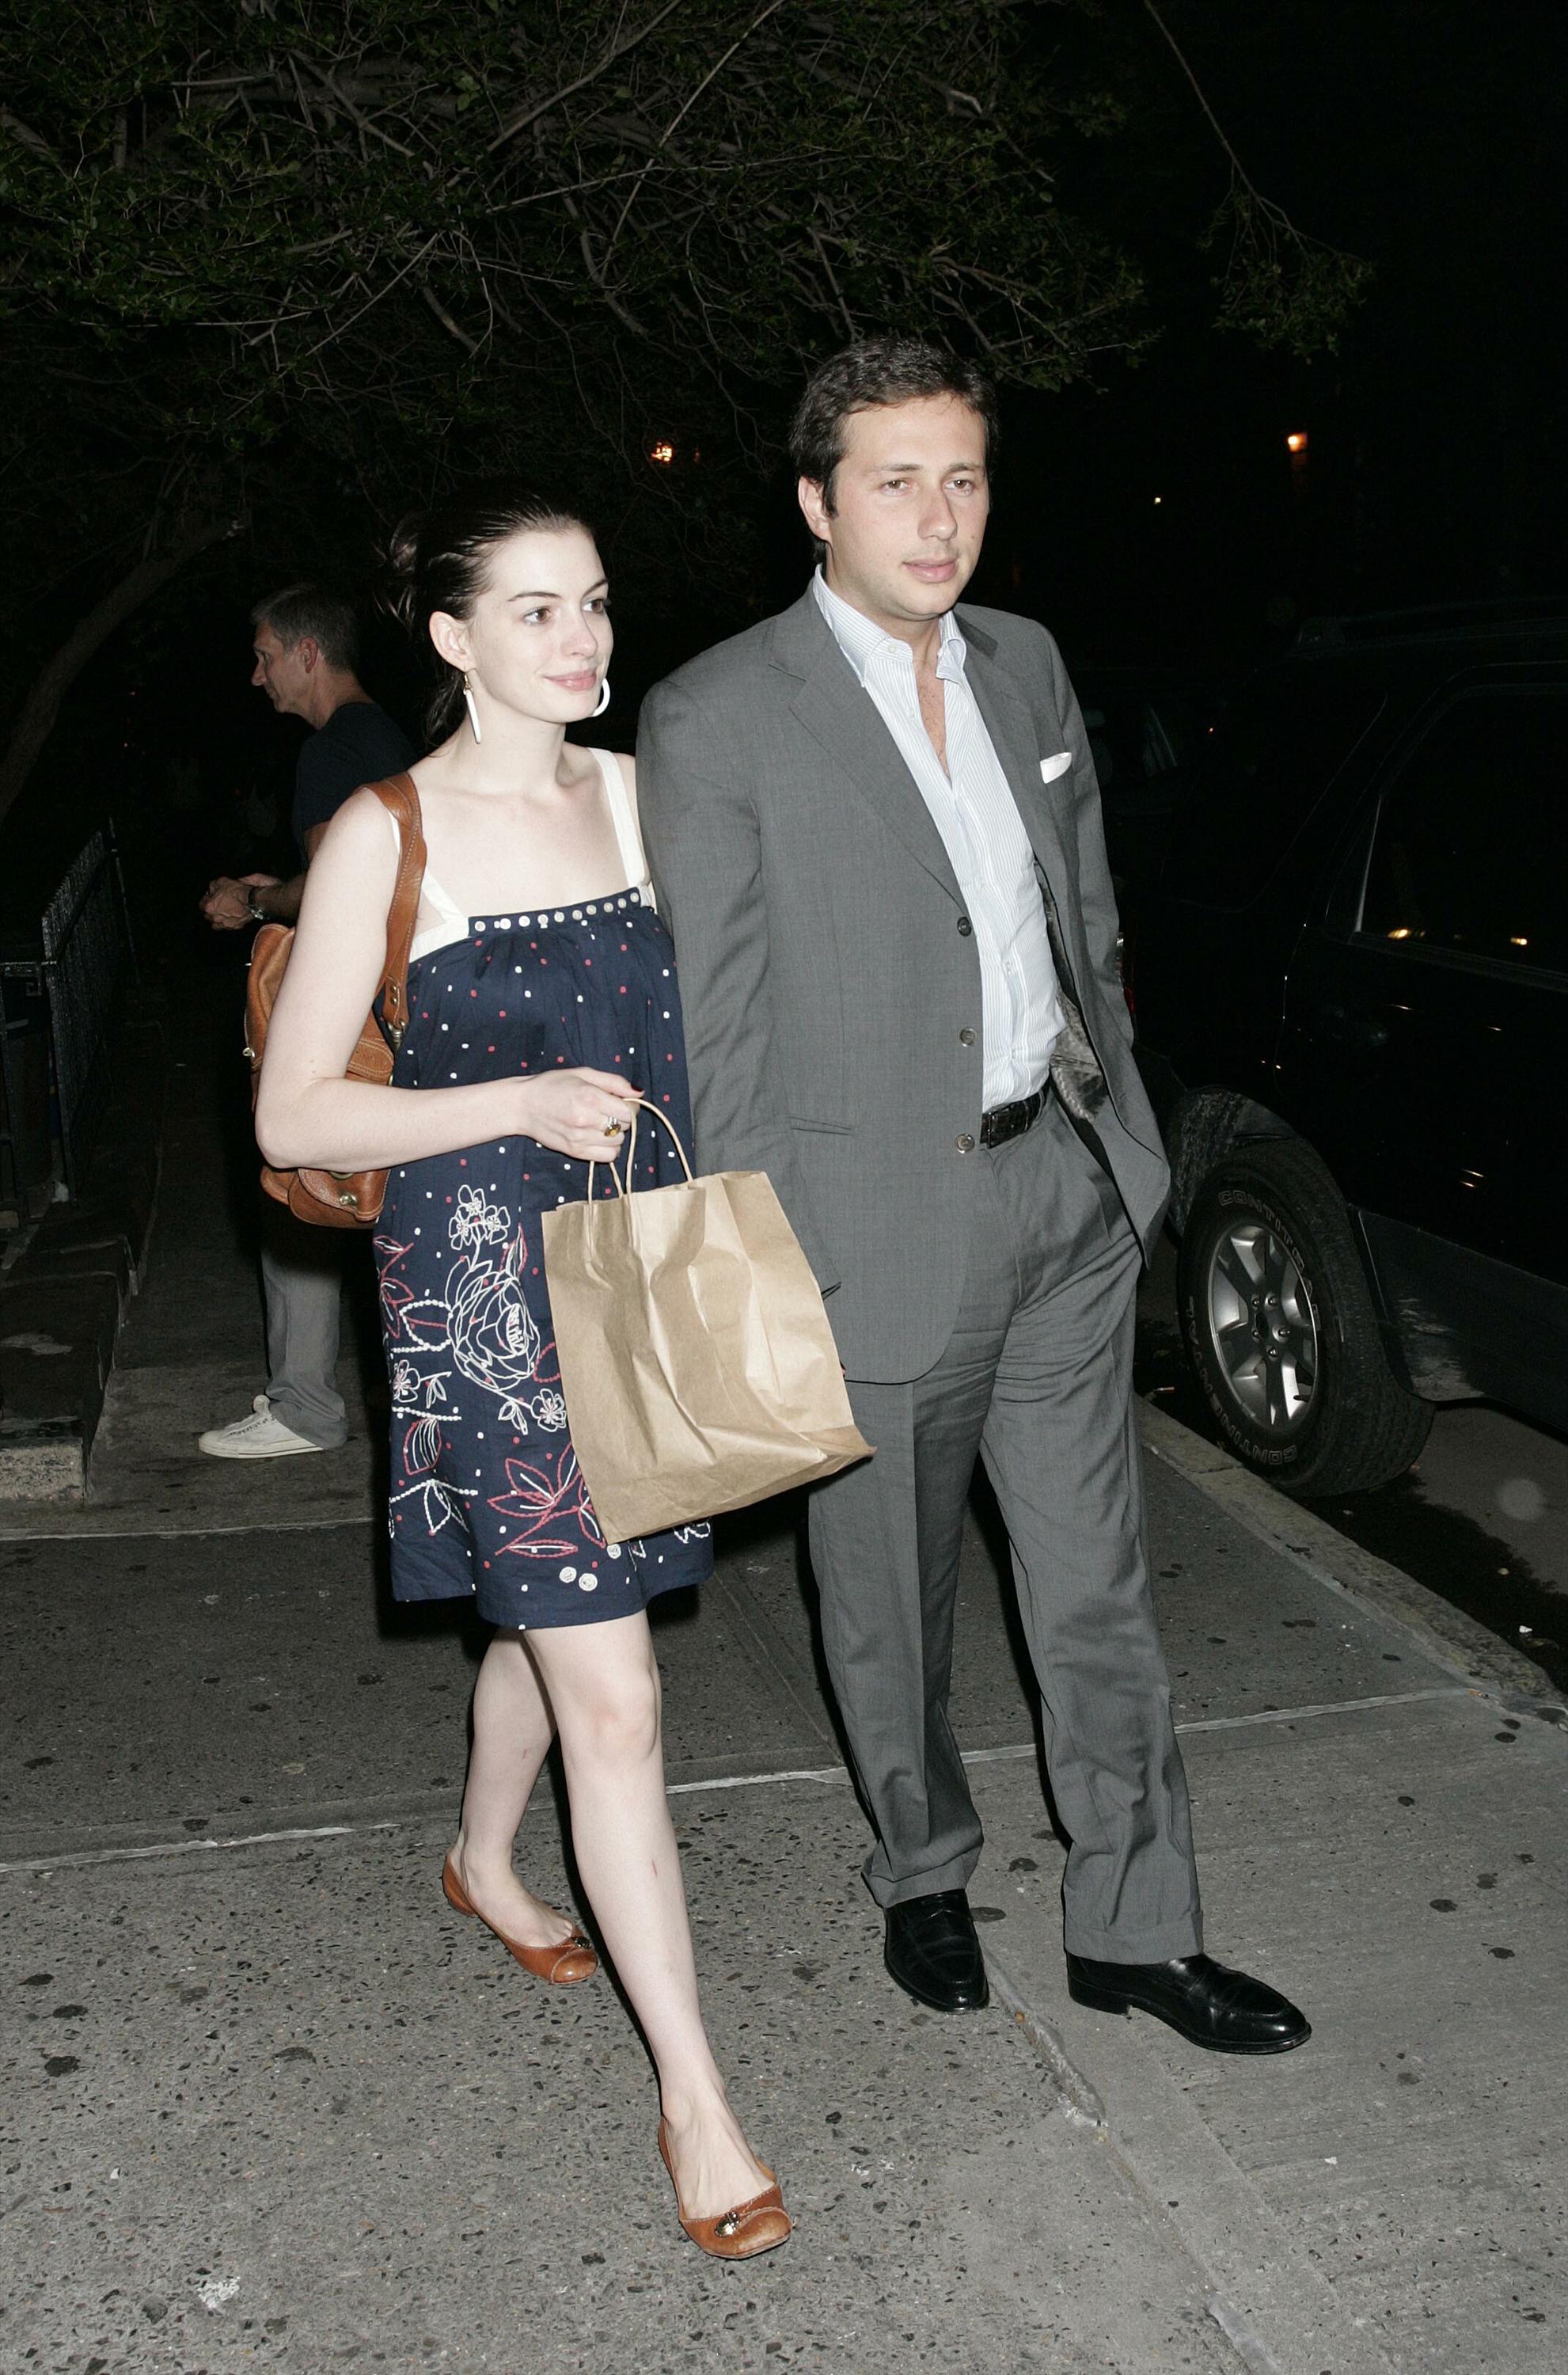 Anne Hathaway and boyfriend leave a lower Manhatten restaurant-2